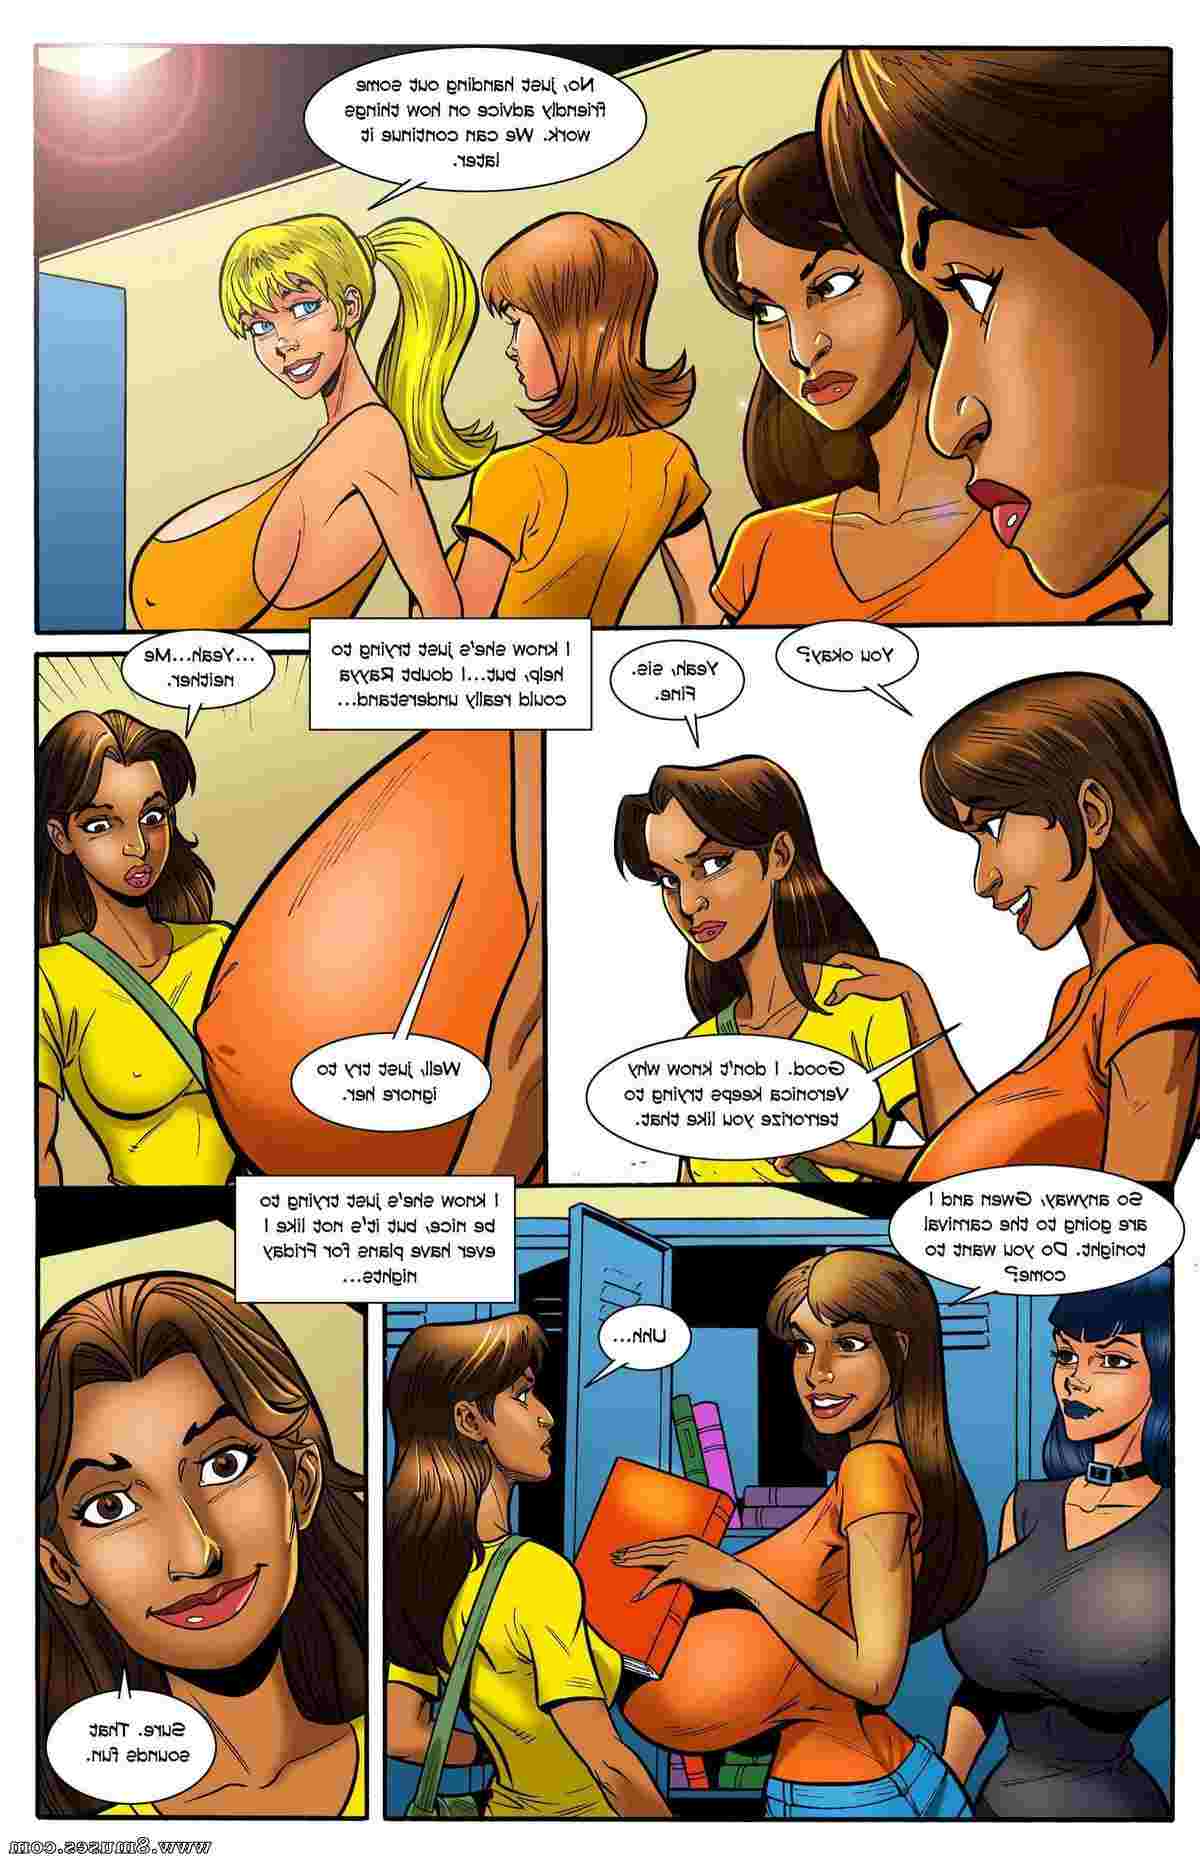 BE-Story-Club-Comics/Tales-from-Chastity-Taras-Story Tales_from_Chastity_-_Taras_Story__8muses_-_Sex_and_Porn_Comics_4.jpg